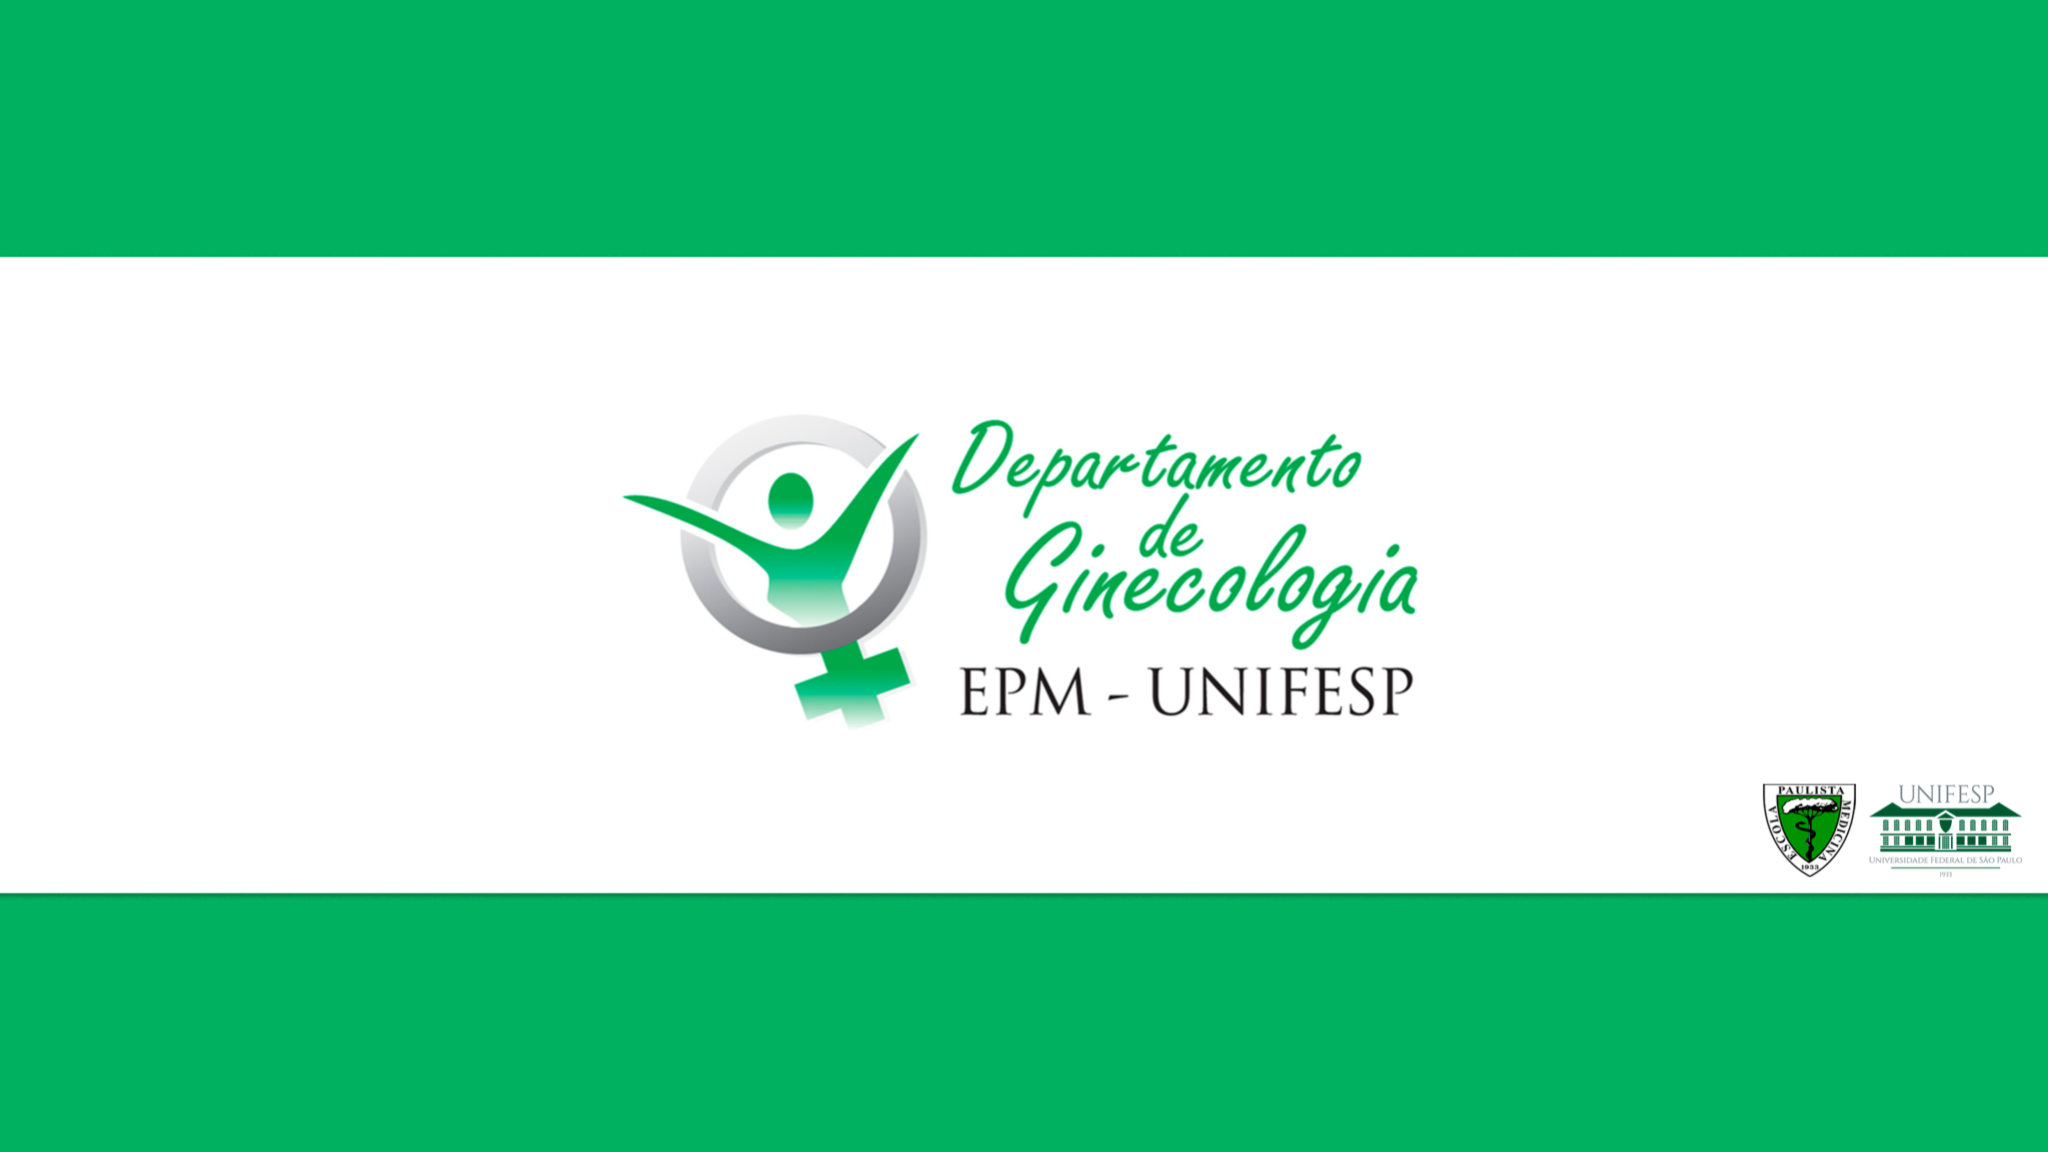 Depto. de Ginecologia EPM-UNIFESP